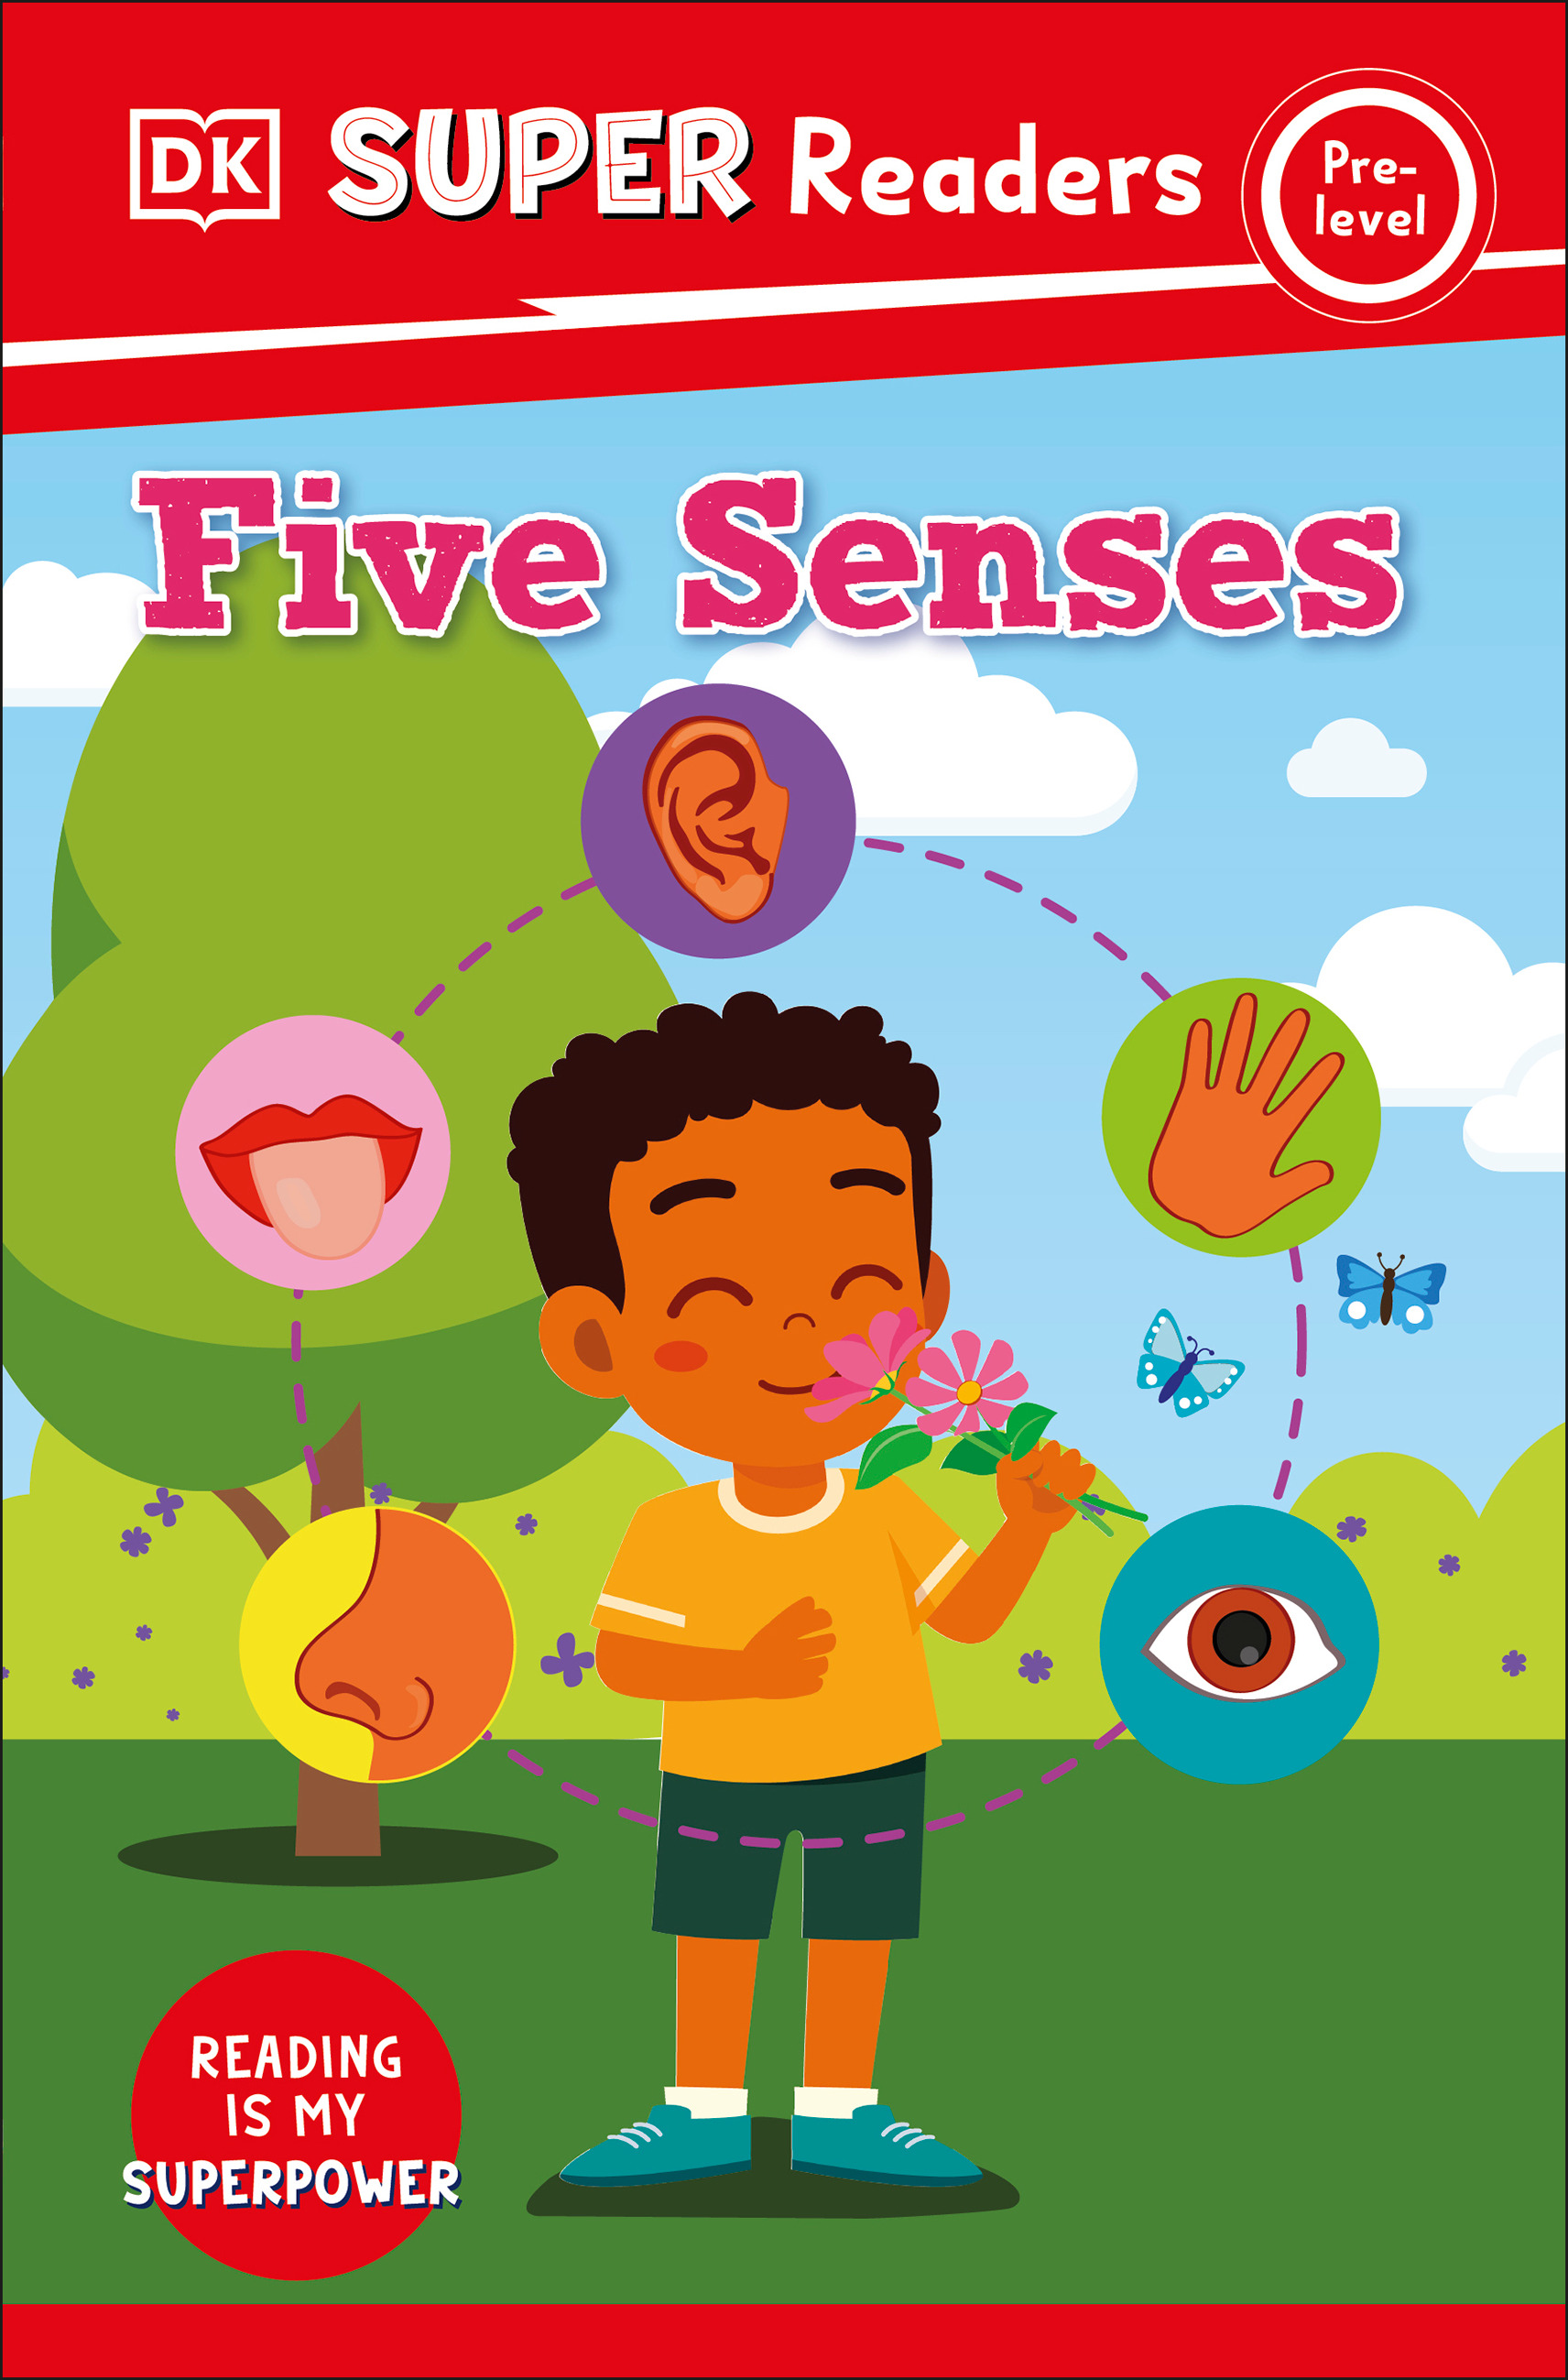 DK Super Readers Pre-Level Five Senses | 